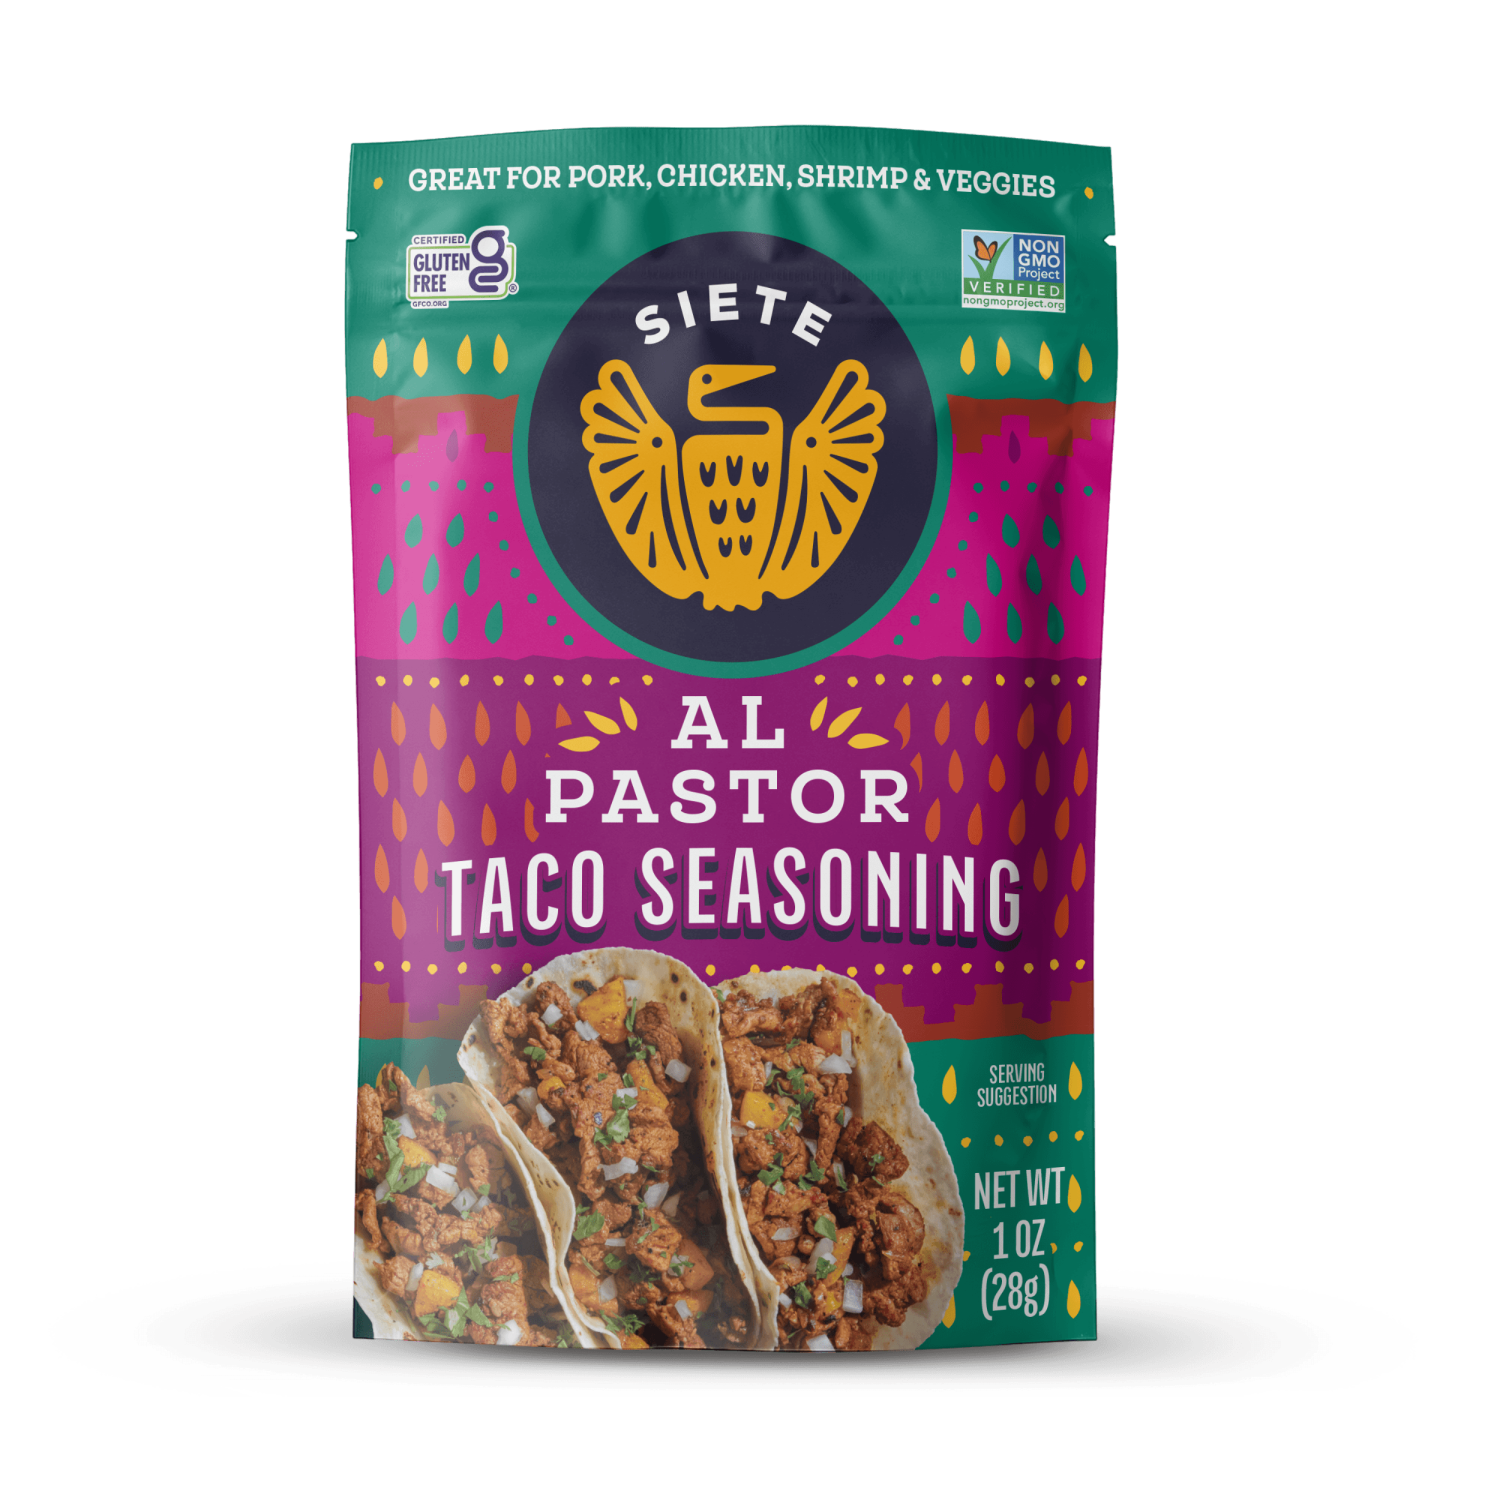 Al Pastor Taco Seasoning - 6 pack